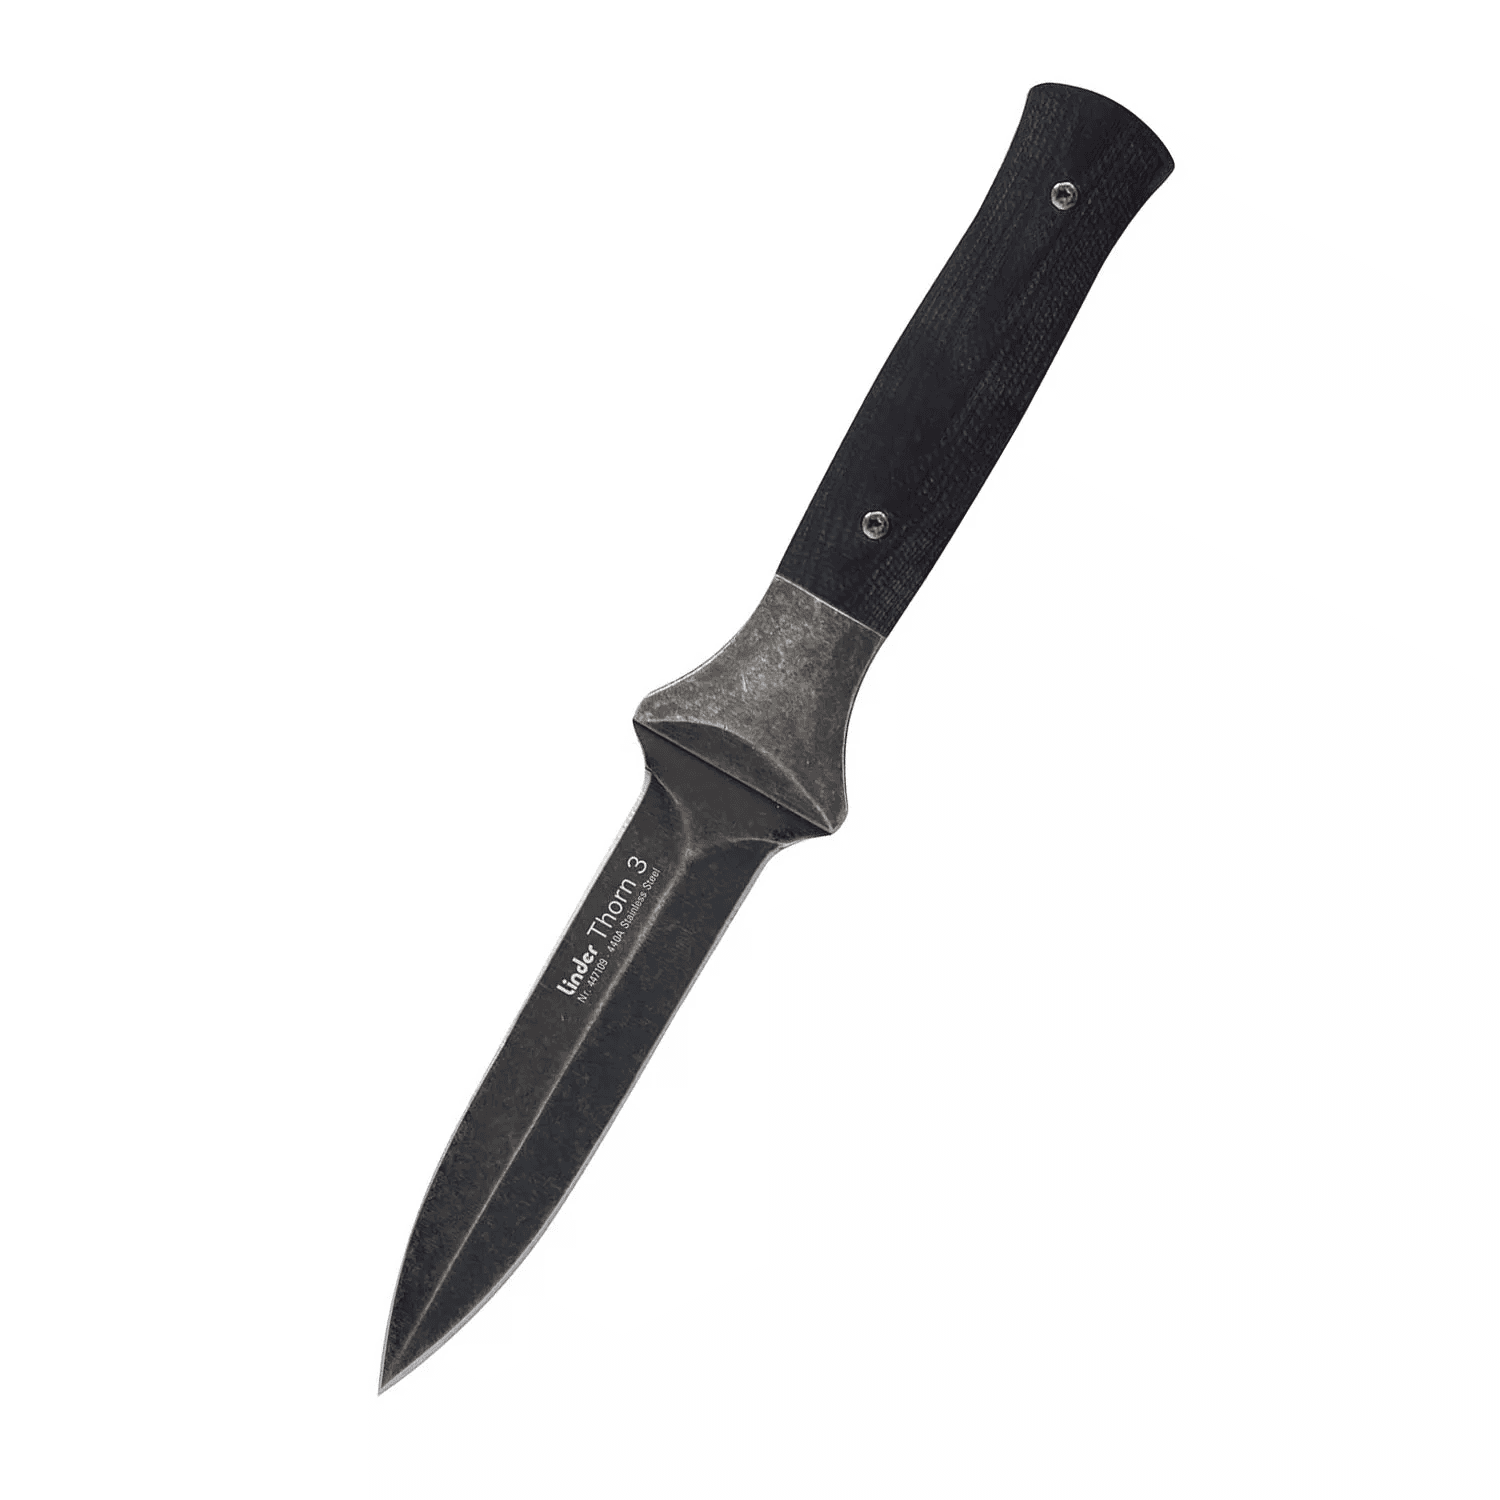 Dýka útočný nůž Thorn 3 s koženým pouzdrem Linder® 447109